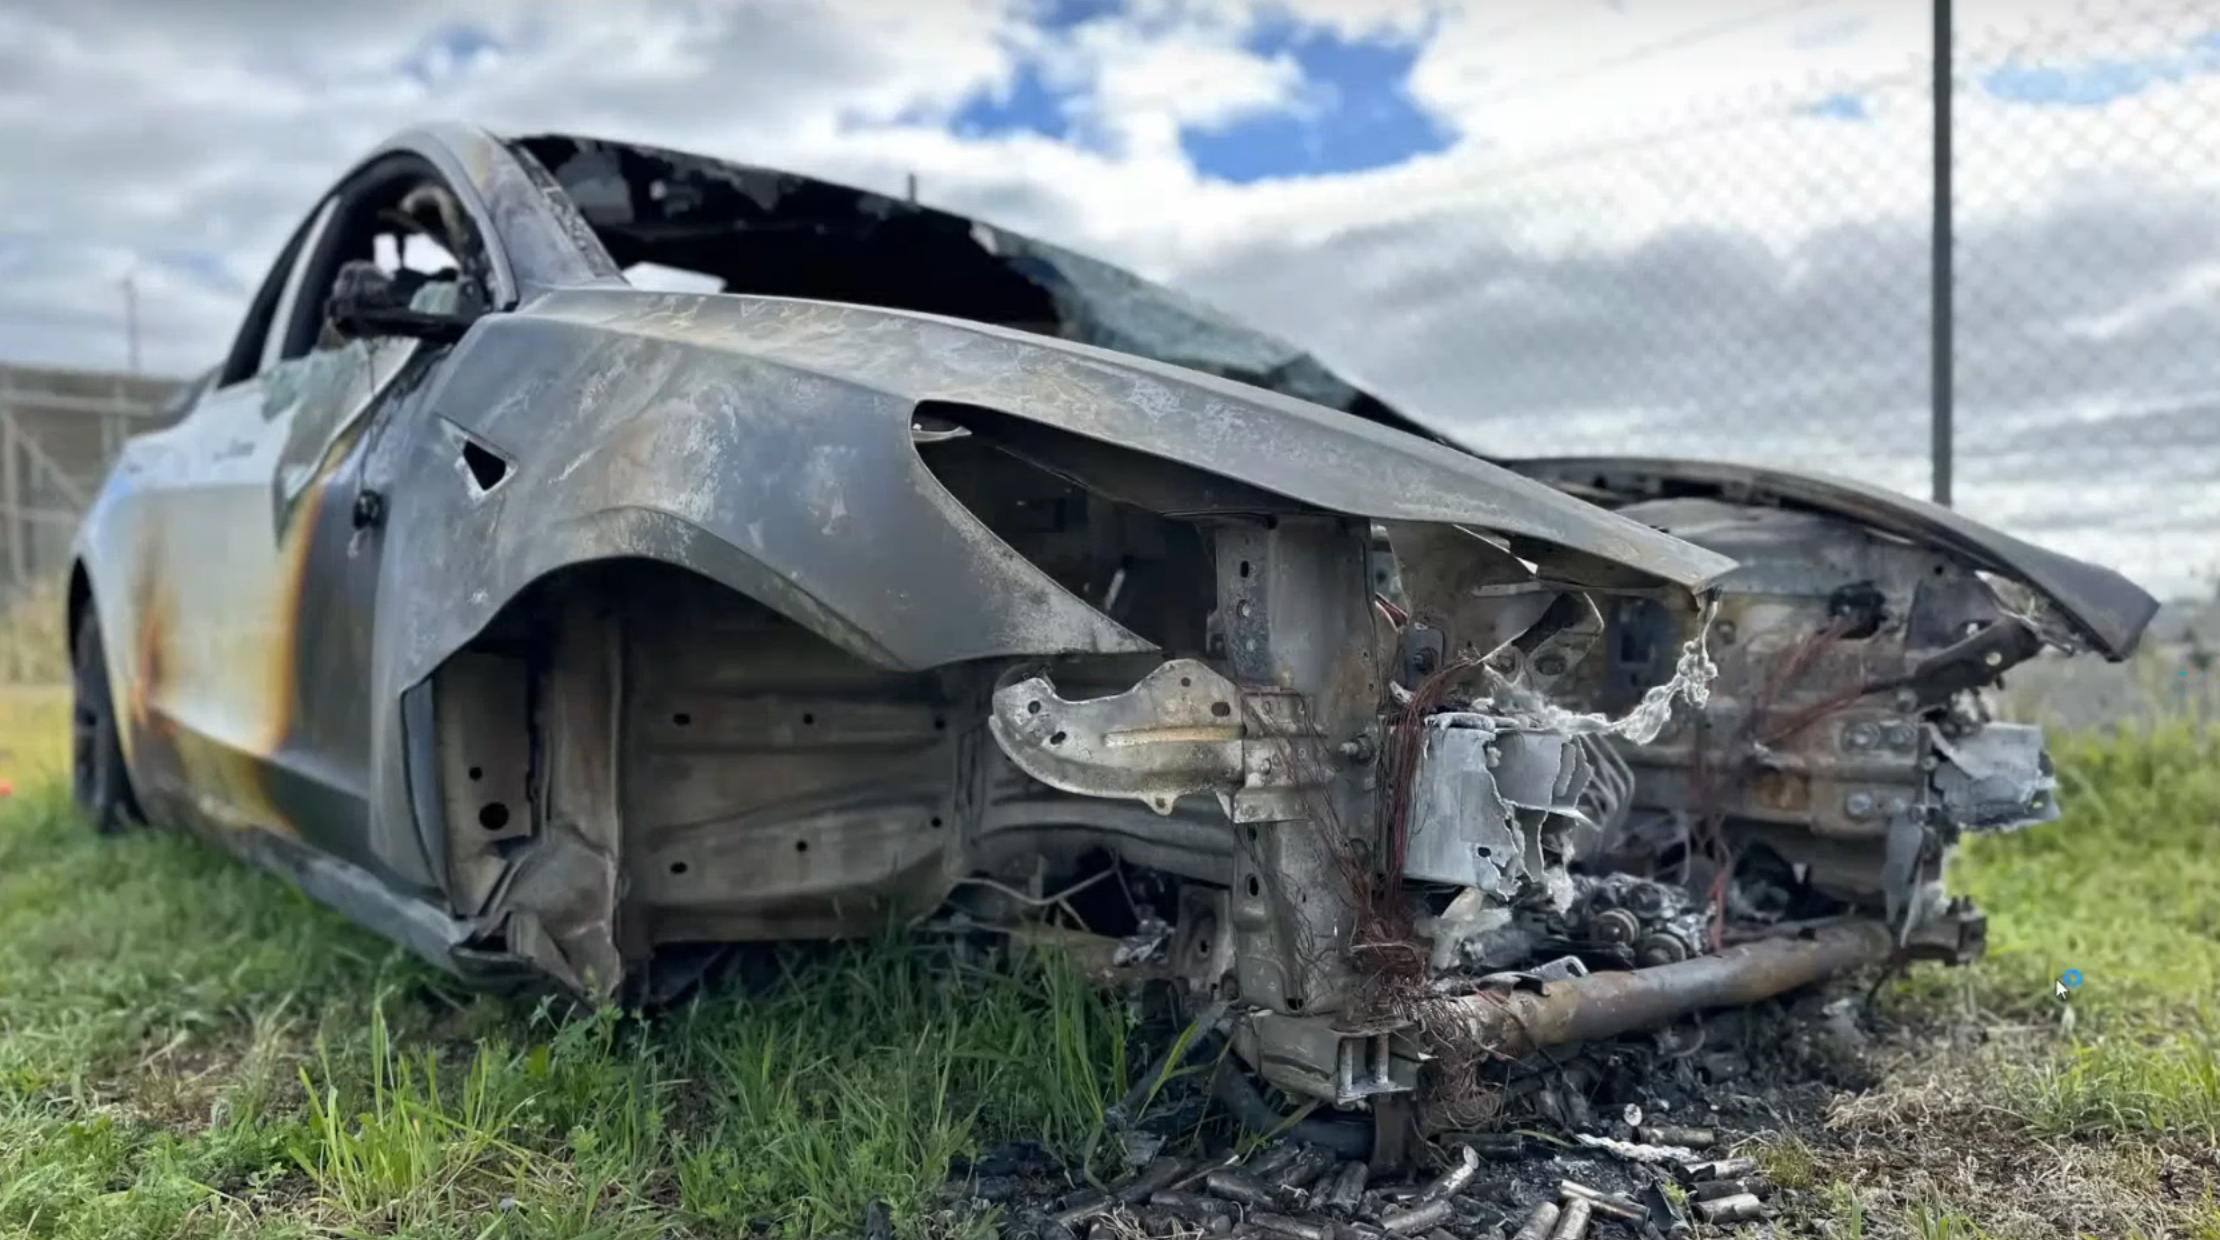 特斯拉向澳大利亚火灾安全调查组织捐赠被销毁的 Model 3